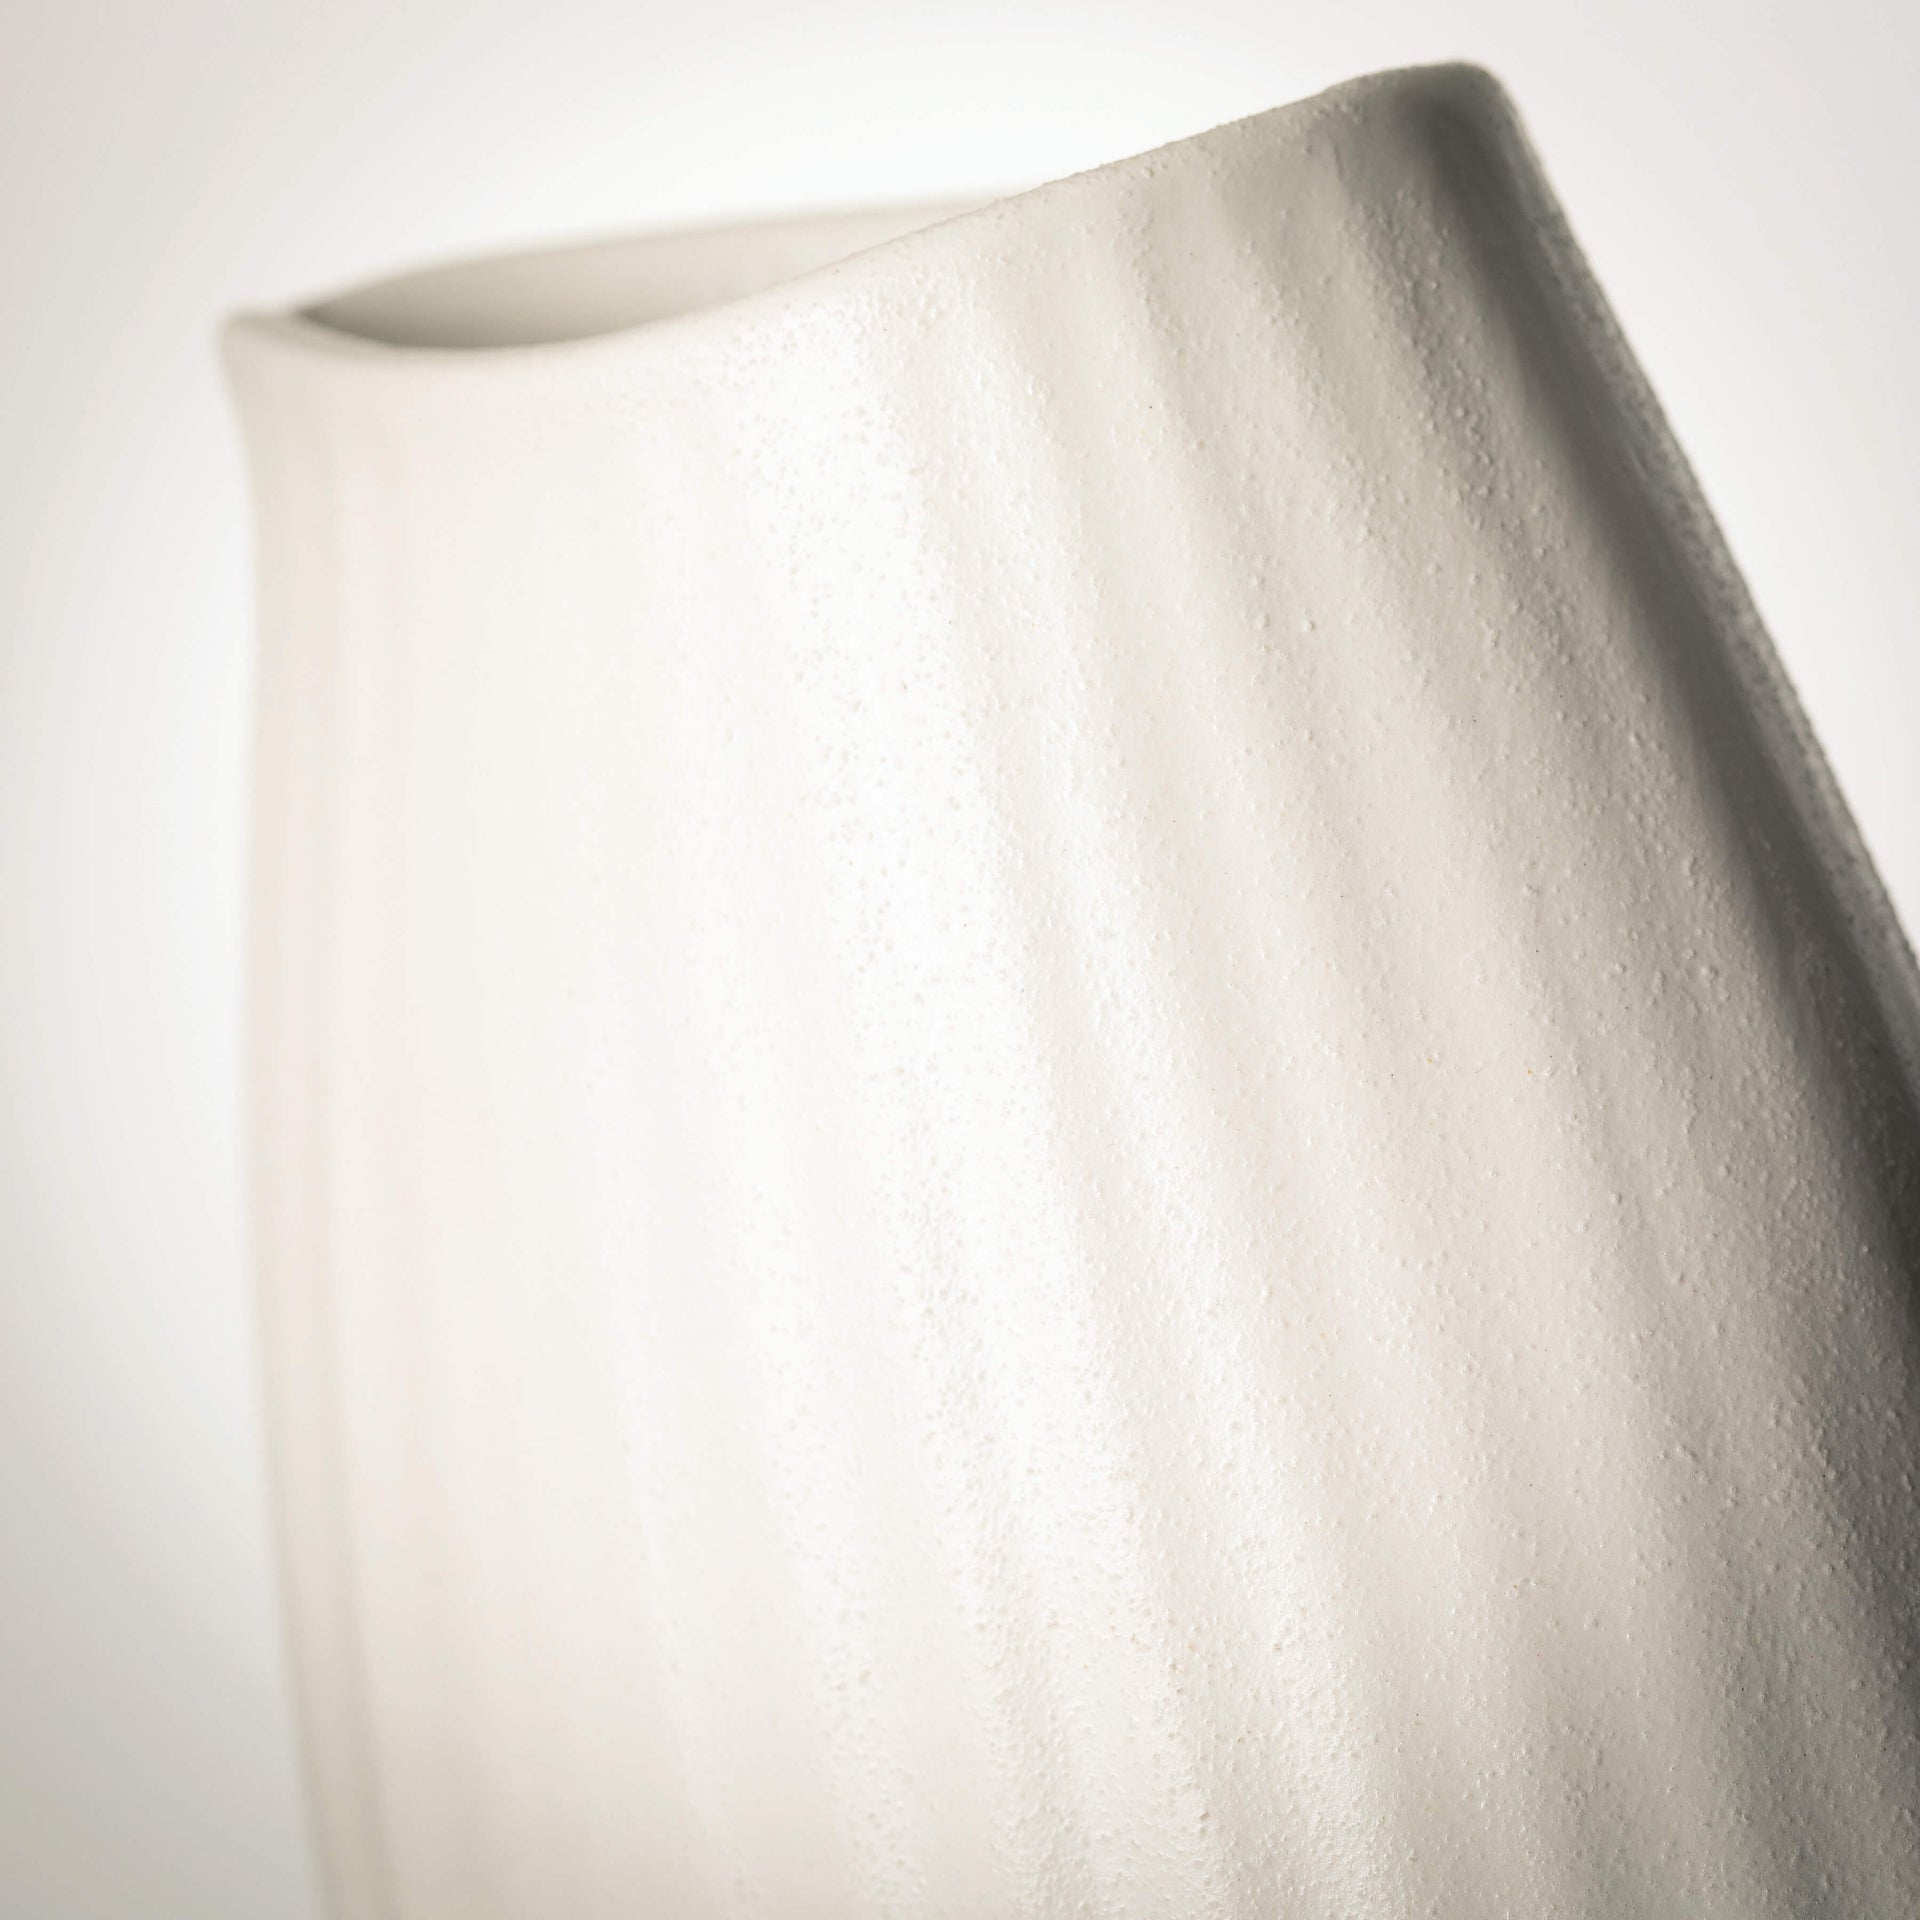 Textured White Ribbed Vase  Sullivans   